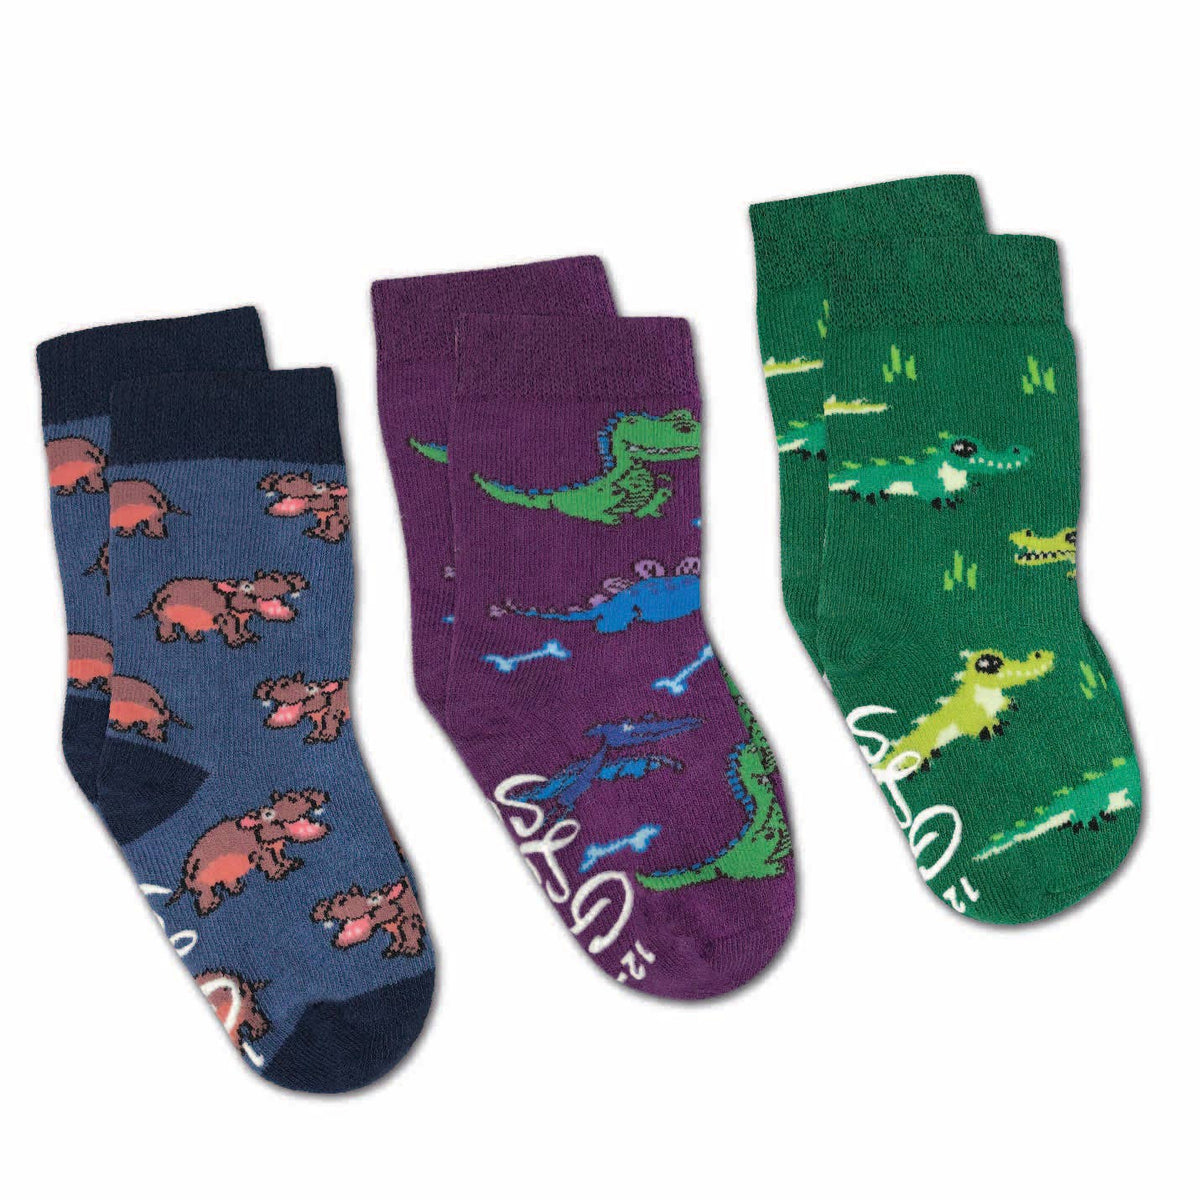 Hippopotamus, Crocodiles and Dinosaurs Kids Socks / 3-Pack / 2-4 years